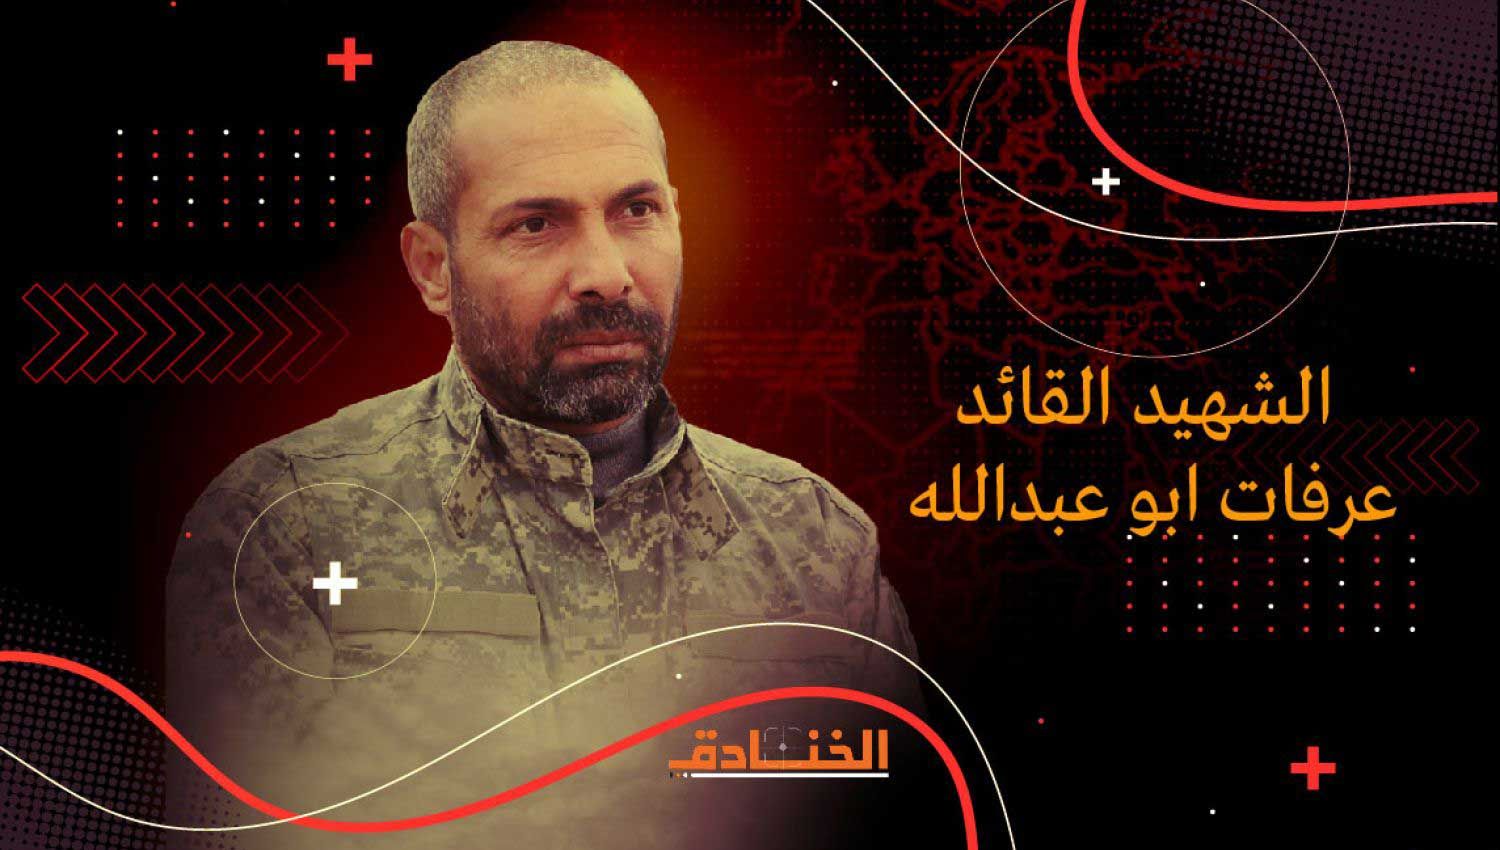  الشهيد عرفات أبو عبد الله: قائد لواء الوسطى في سرايا القدس